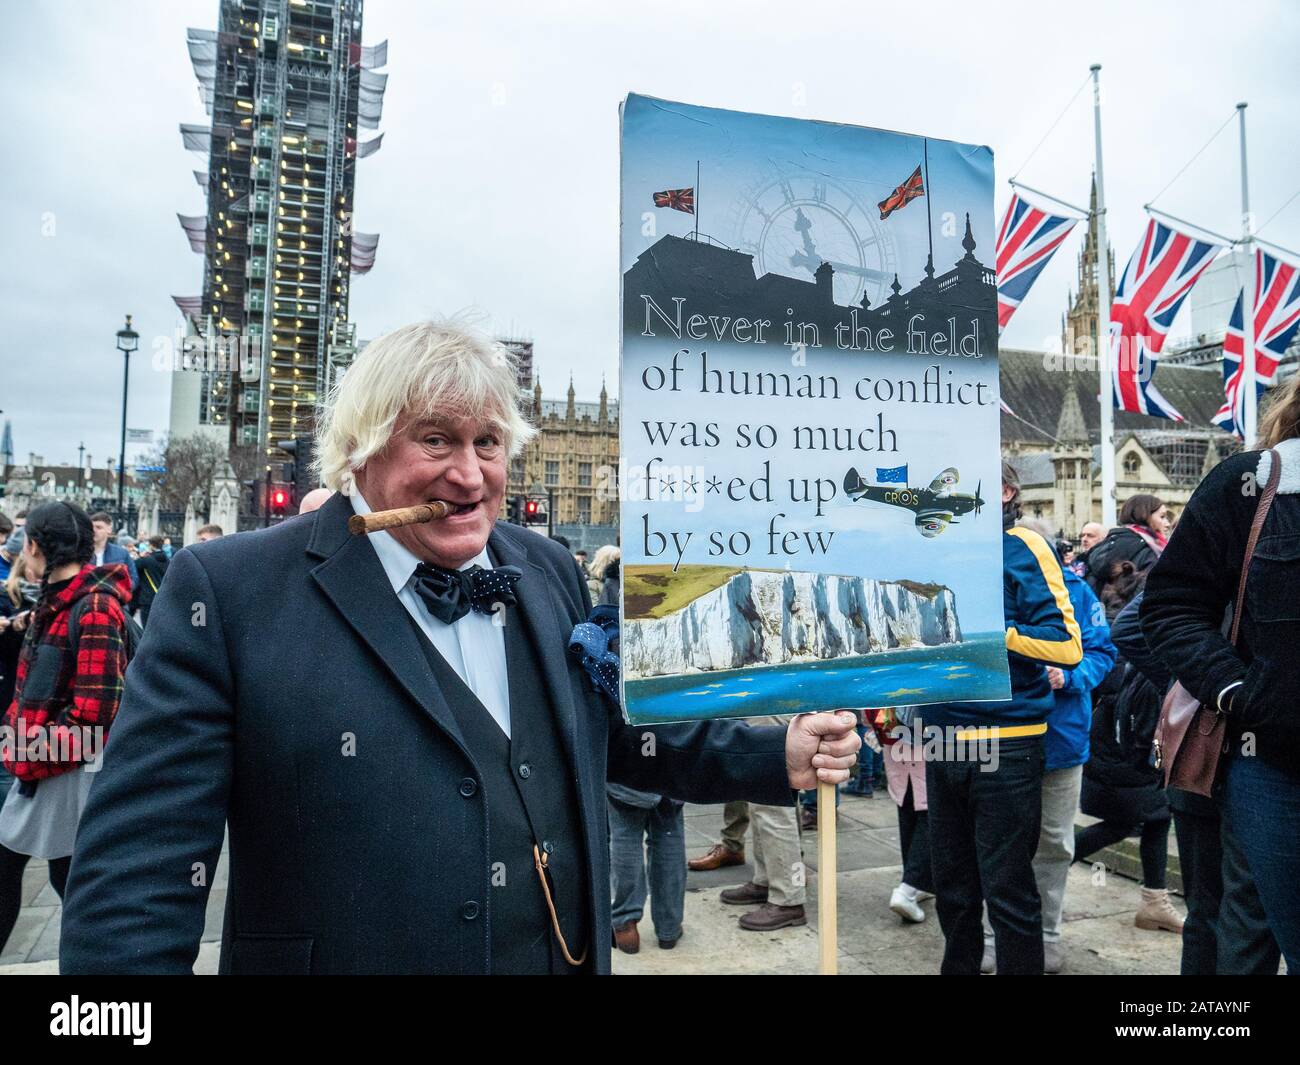 Brexit Day 31. Januar 2020 auf dem Parliament Square, London, England, da ein Mann mit einem humorvollen Schild steht, das sich auf einen Tschurchil-Spieß bezieht. Stockfoto